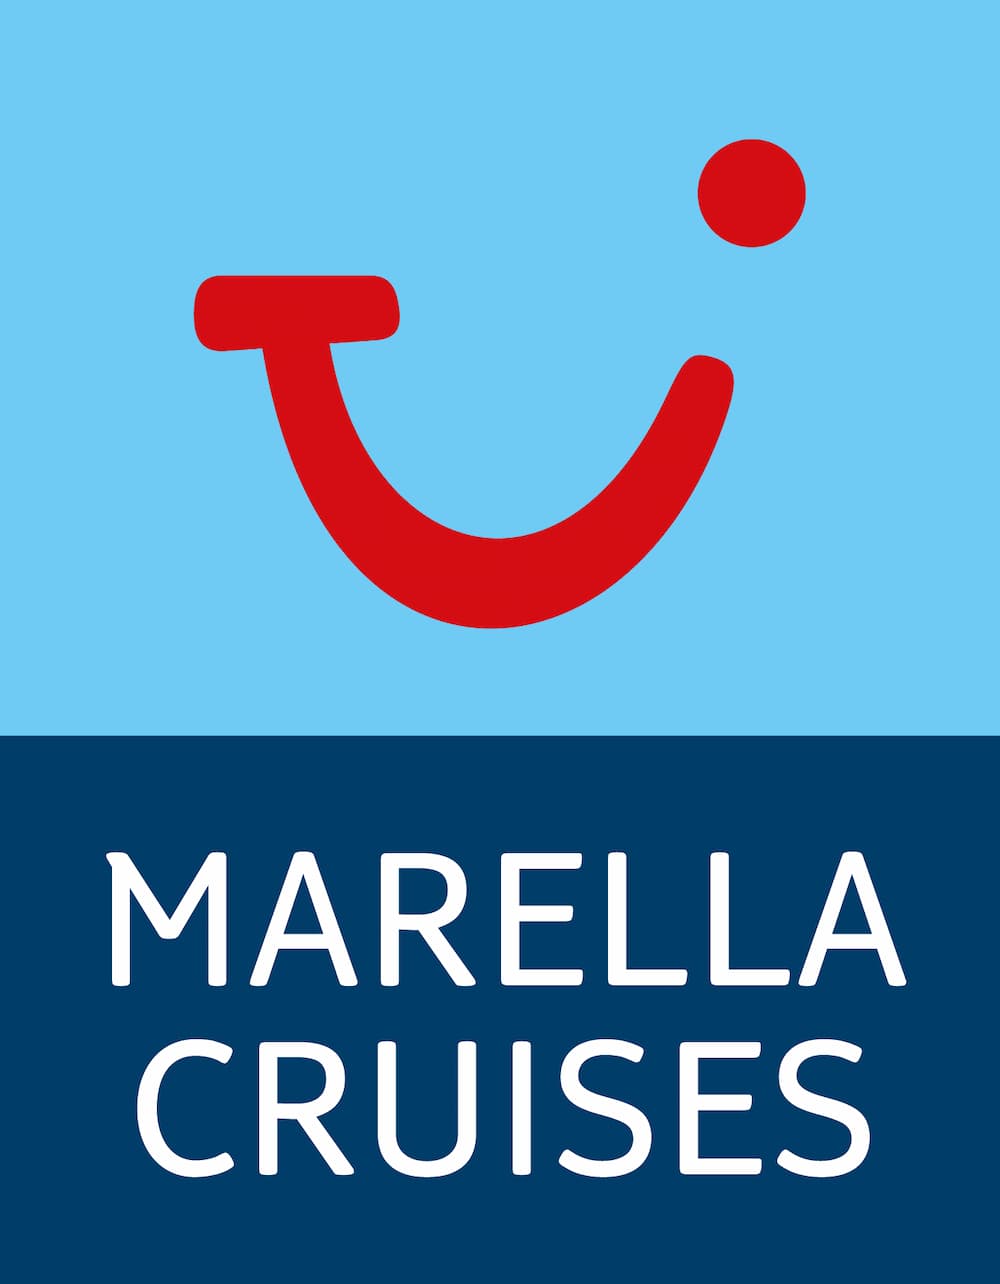 marella cruises around britain